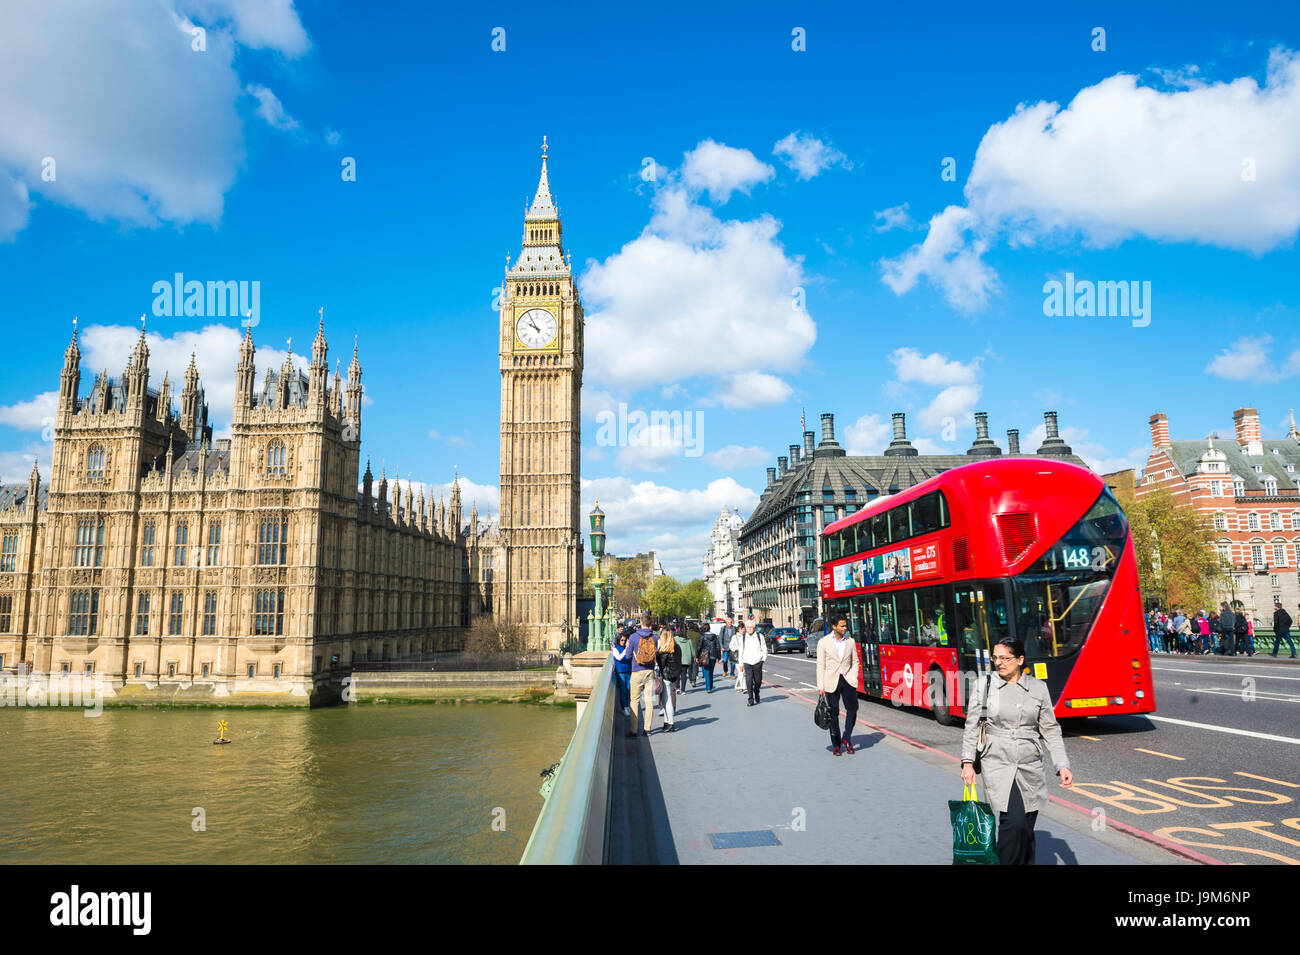 Londres - le 27 avril 2015 : un bus à double étage passe les piétons qui traversent le pont de Westminster Palace par un beau matin de printemps. Banque D'Images